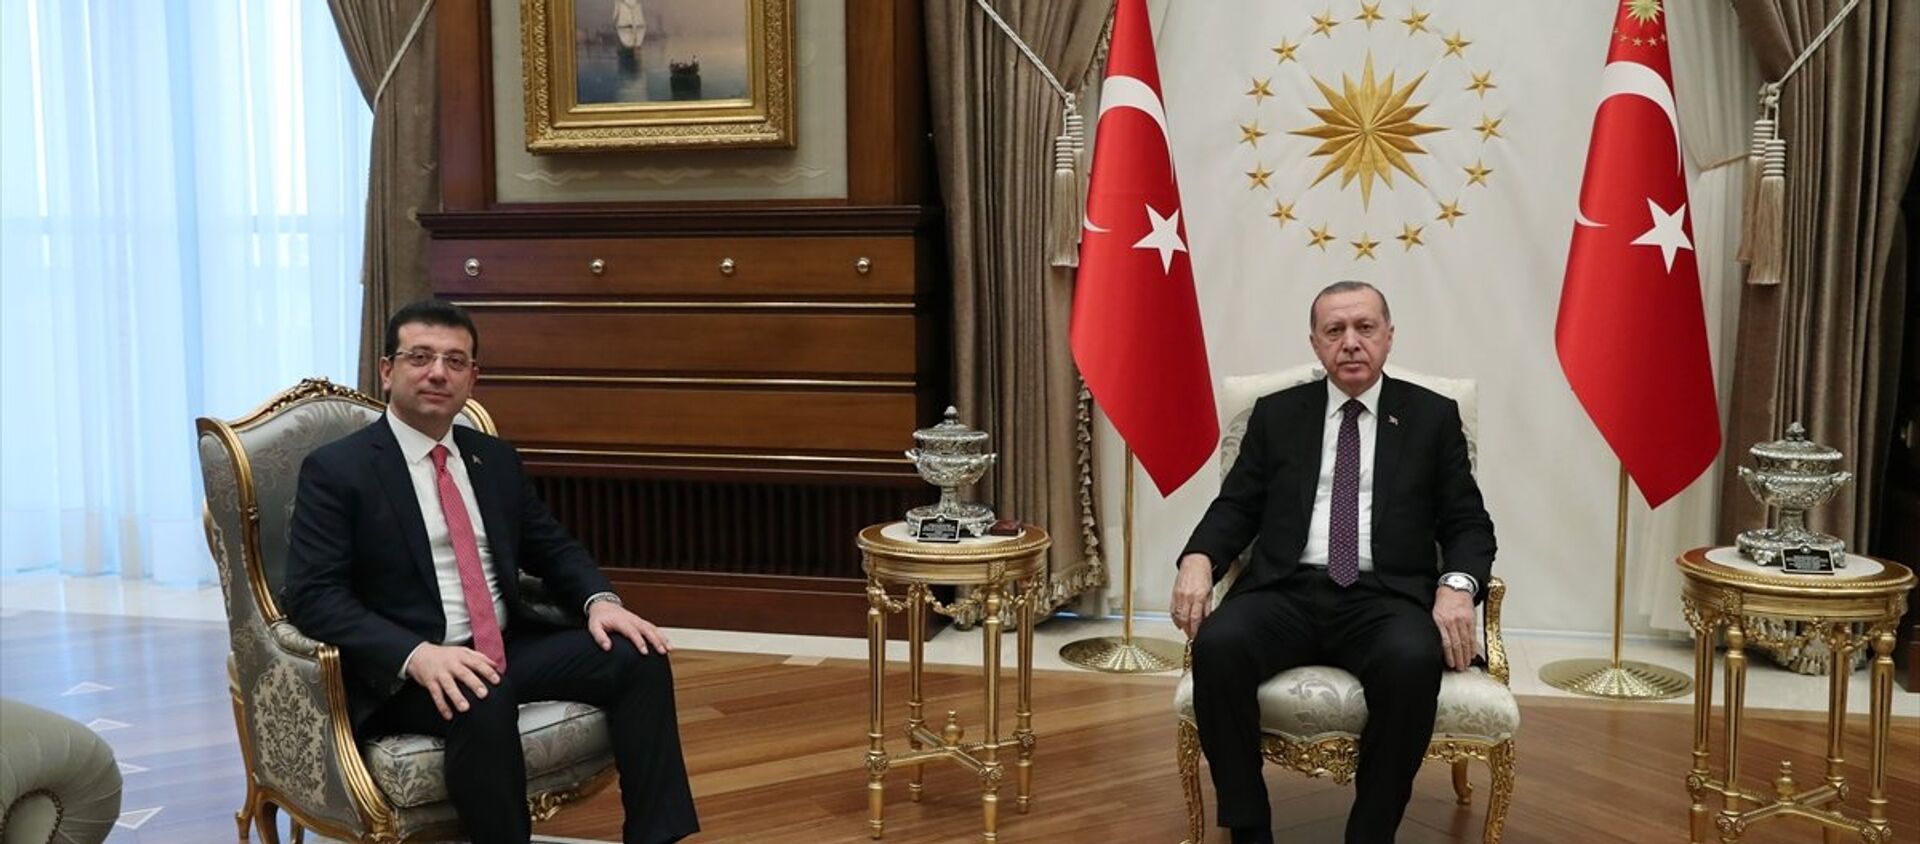 Erdoğan ile görüşen İmamoğlu: 'Oyunuza talibim' dedim, gülümsedi - Sputnik Türkiye, 1920, 26.01.2021